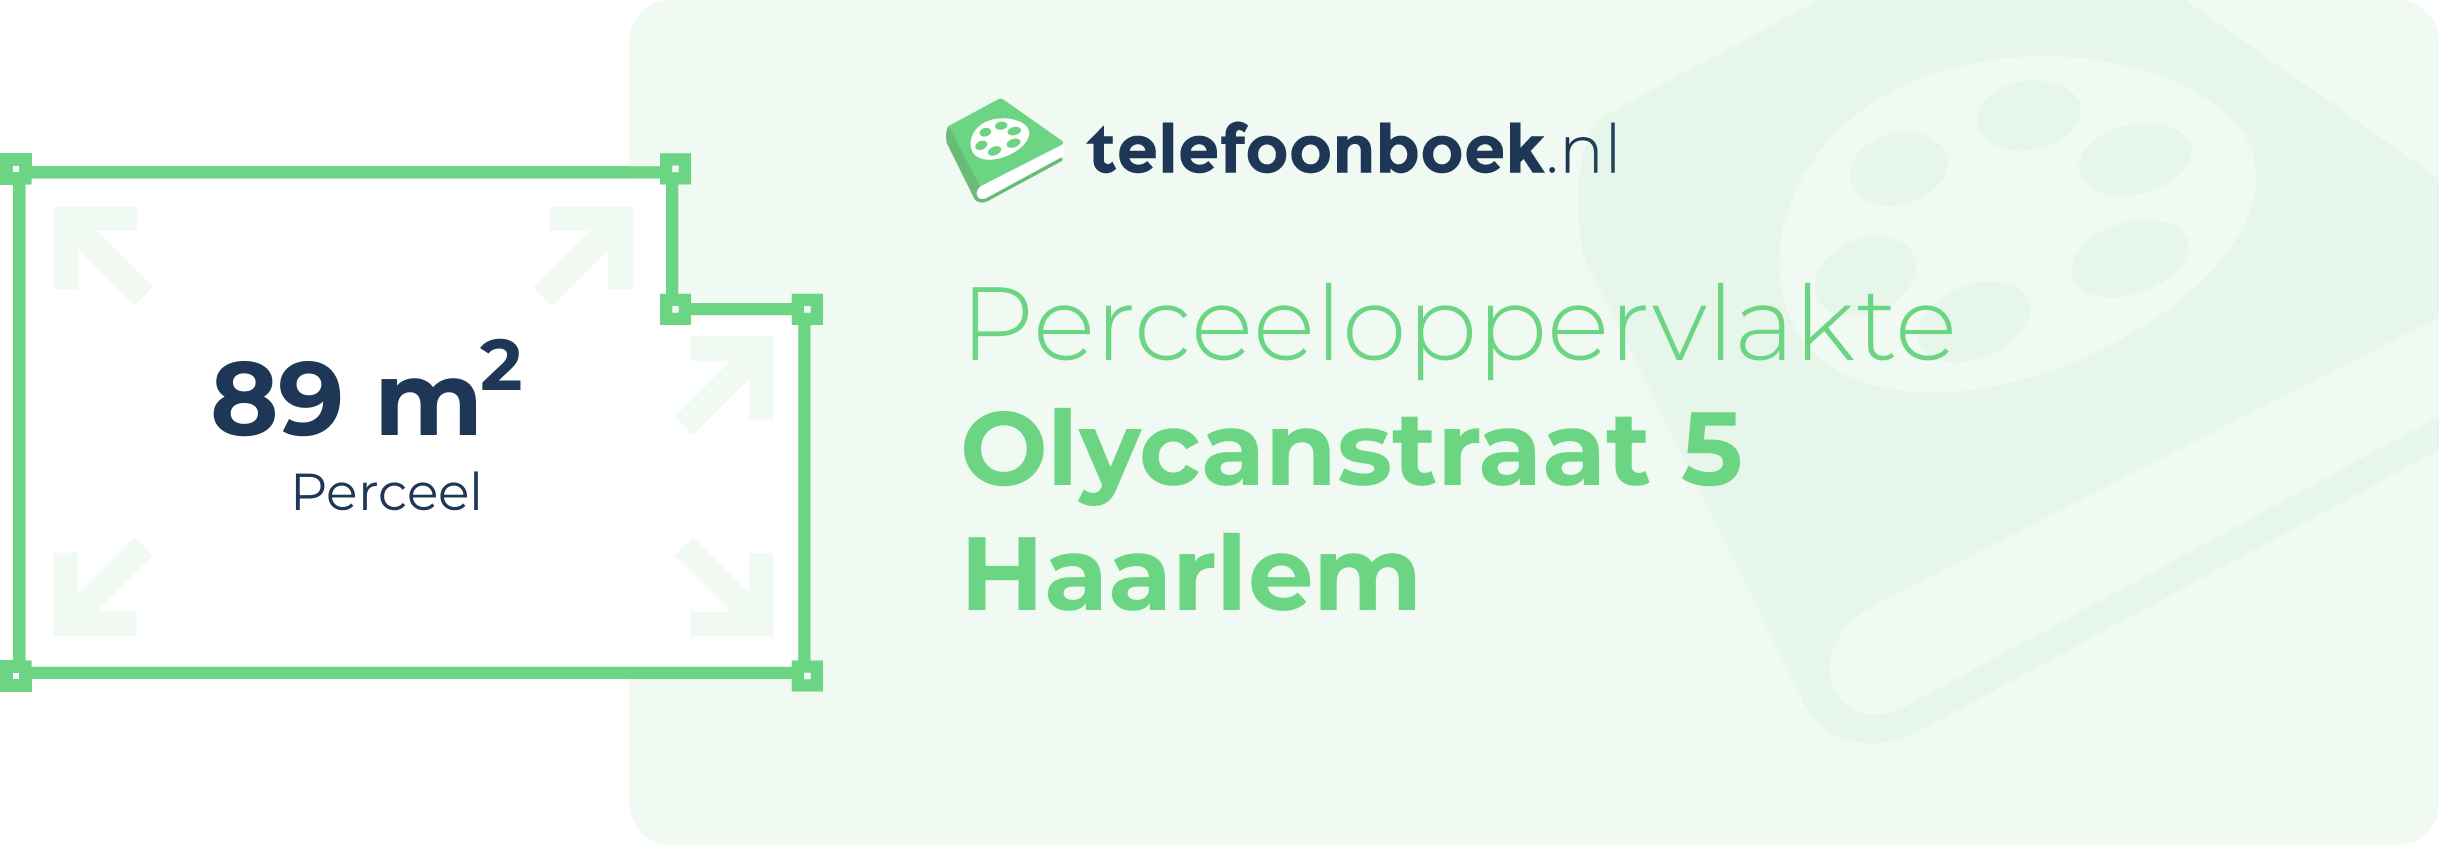 Perceeloppervlakte Olycanstraat 5 Haarlem